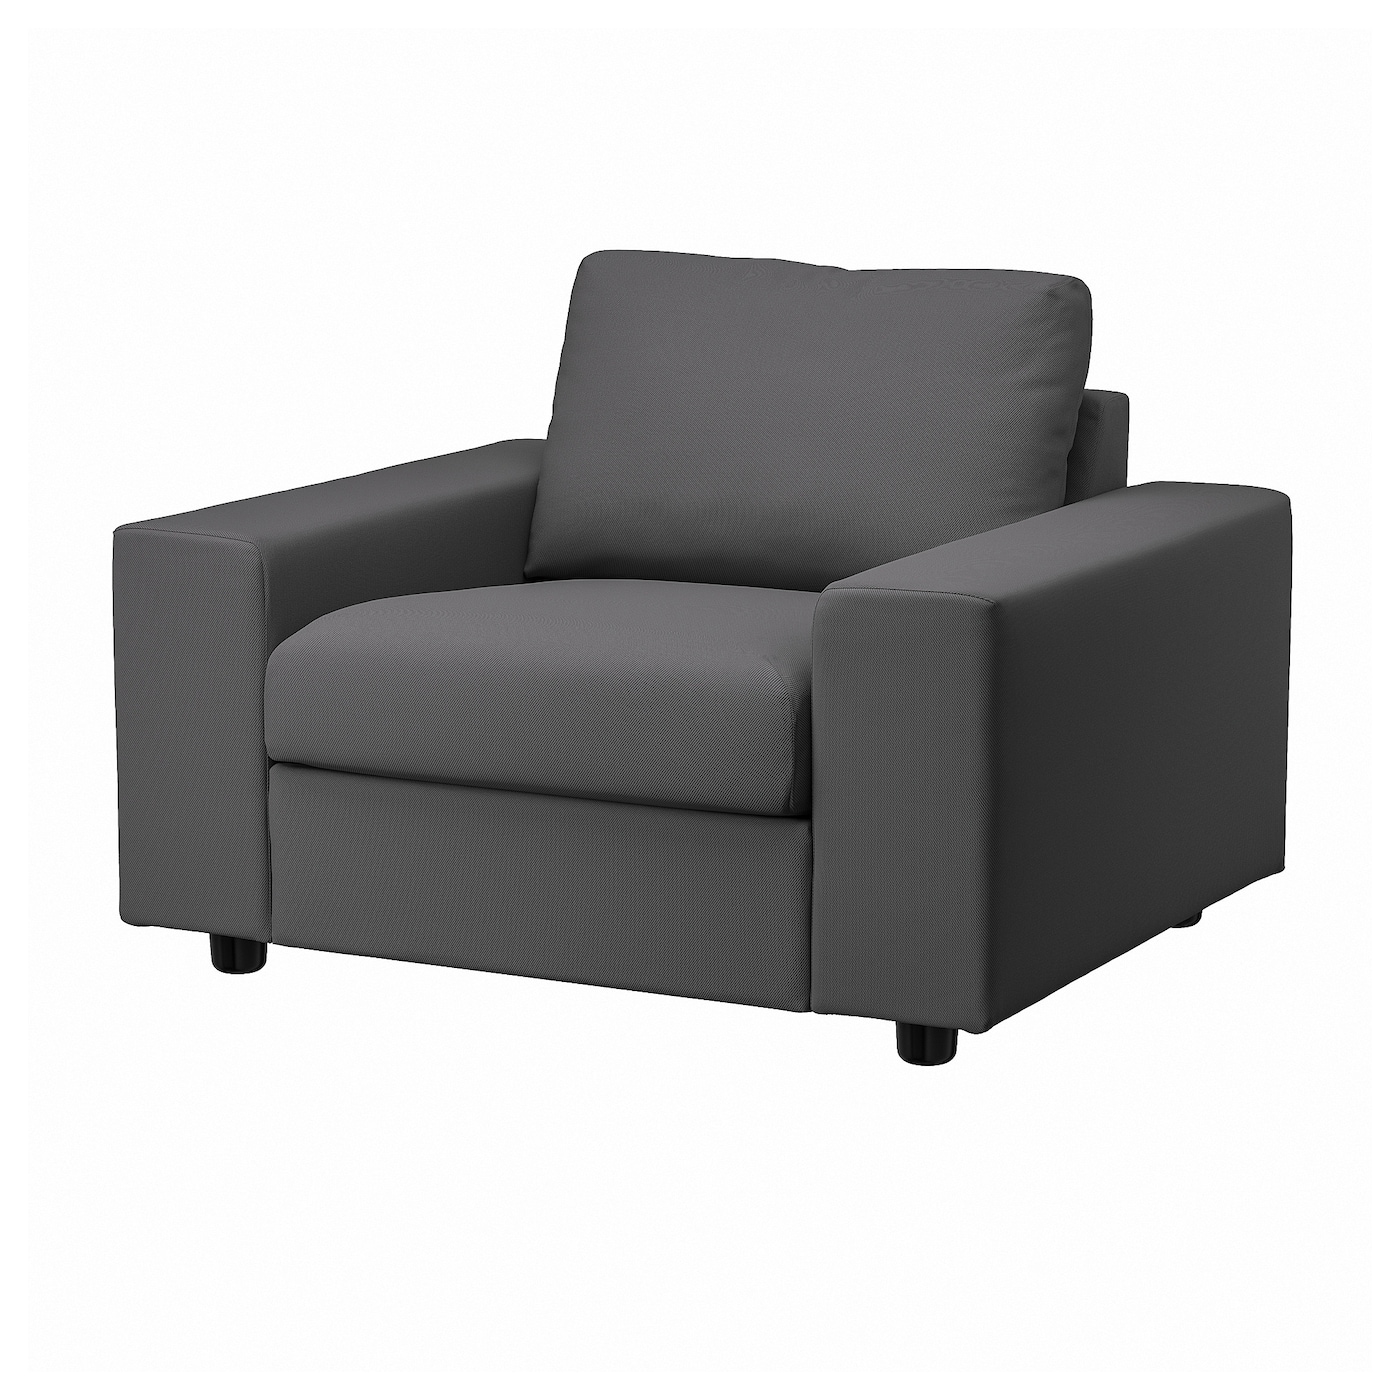 ВИМЛЕ Кресло, с широкими подлокотниками/Халларп серый VIMLE IKEA